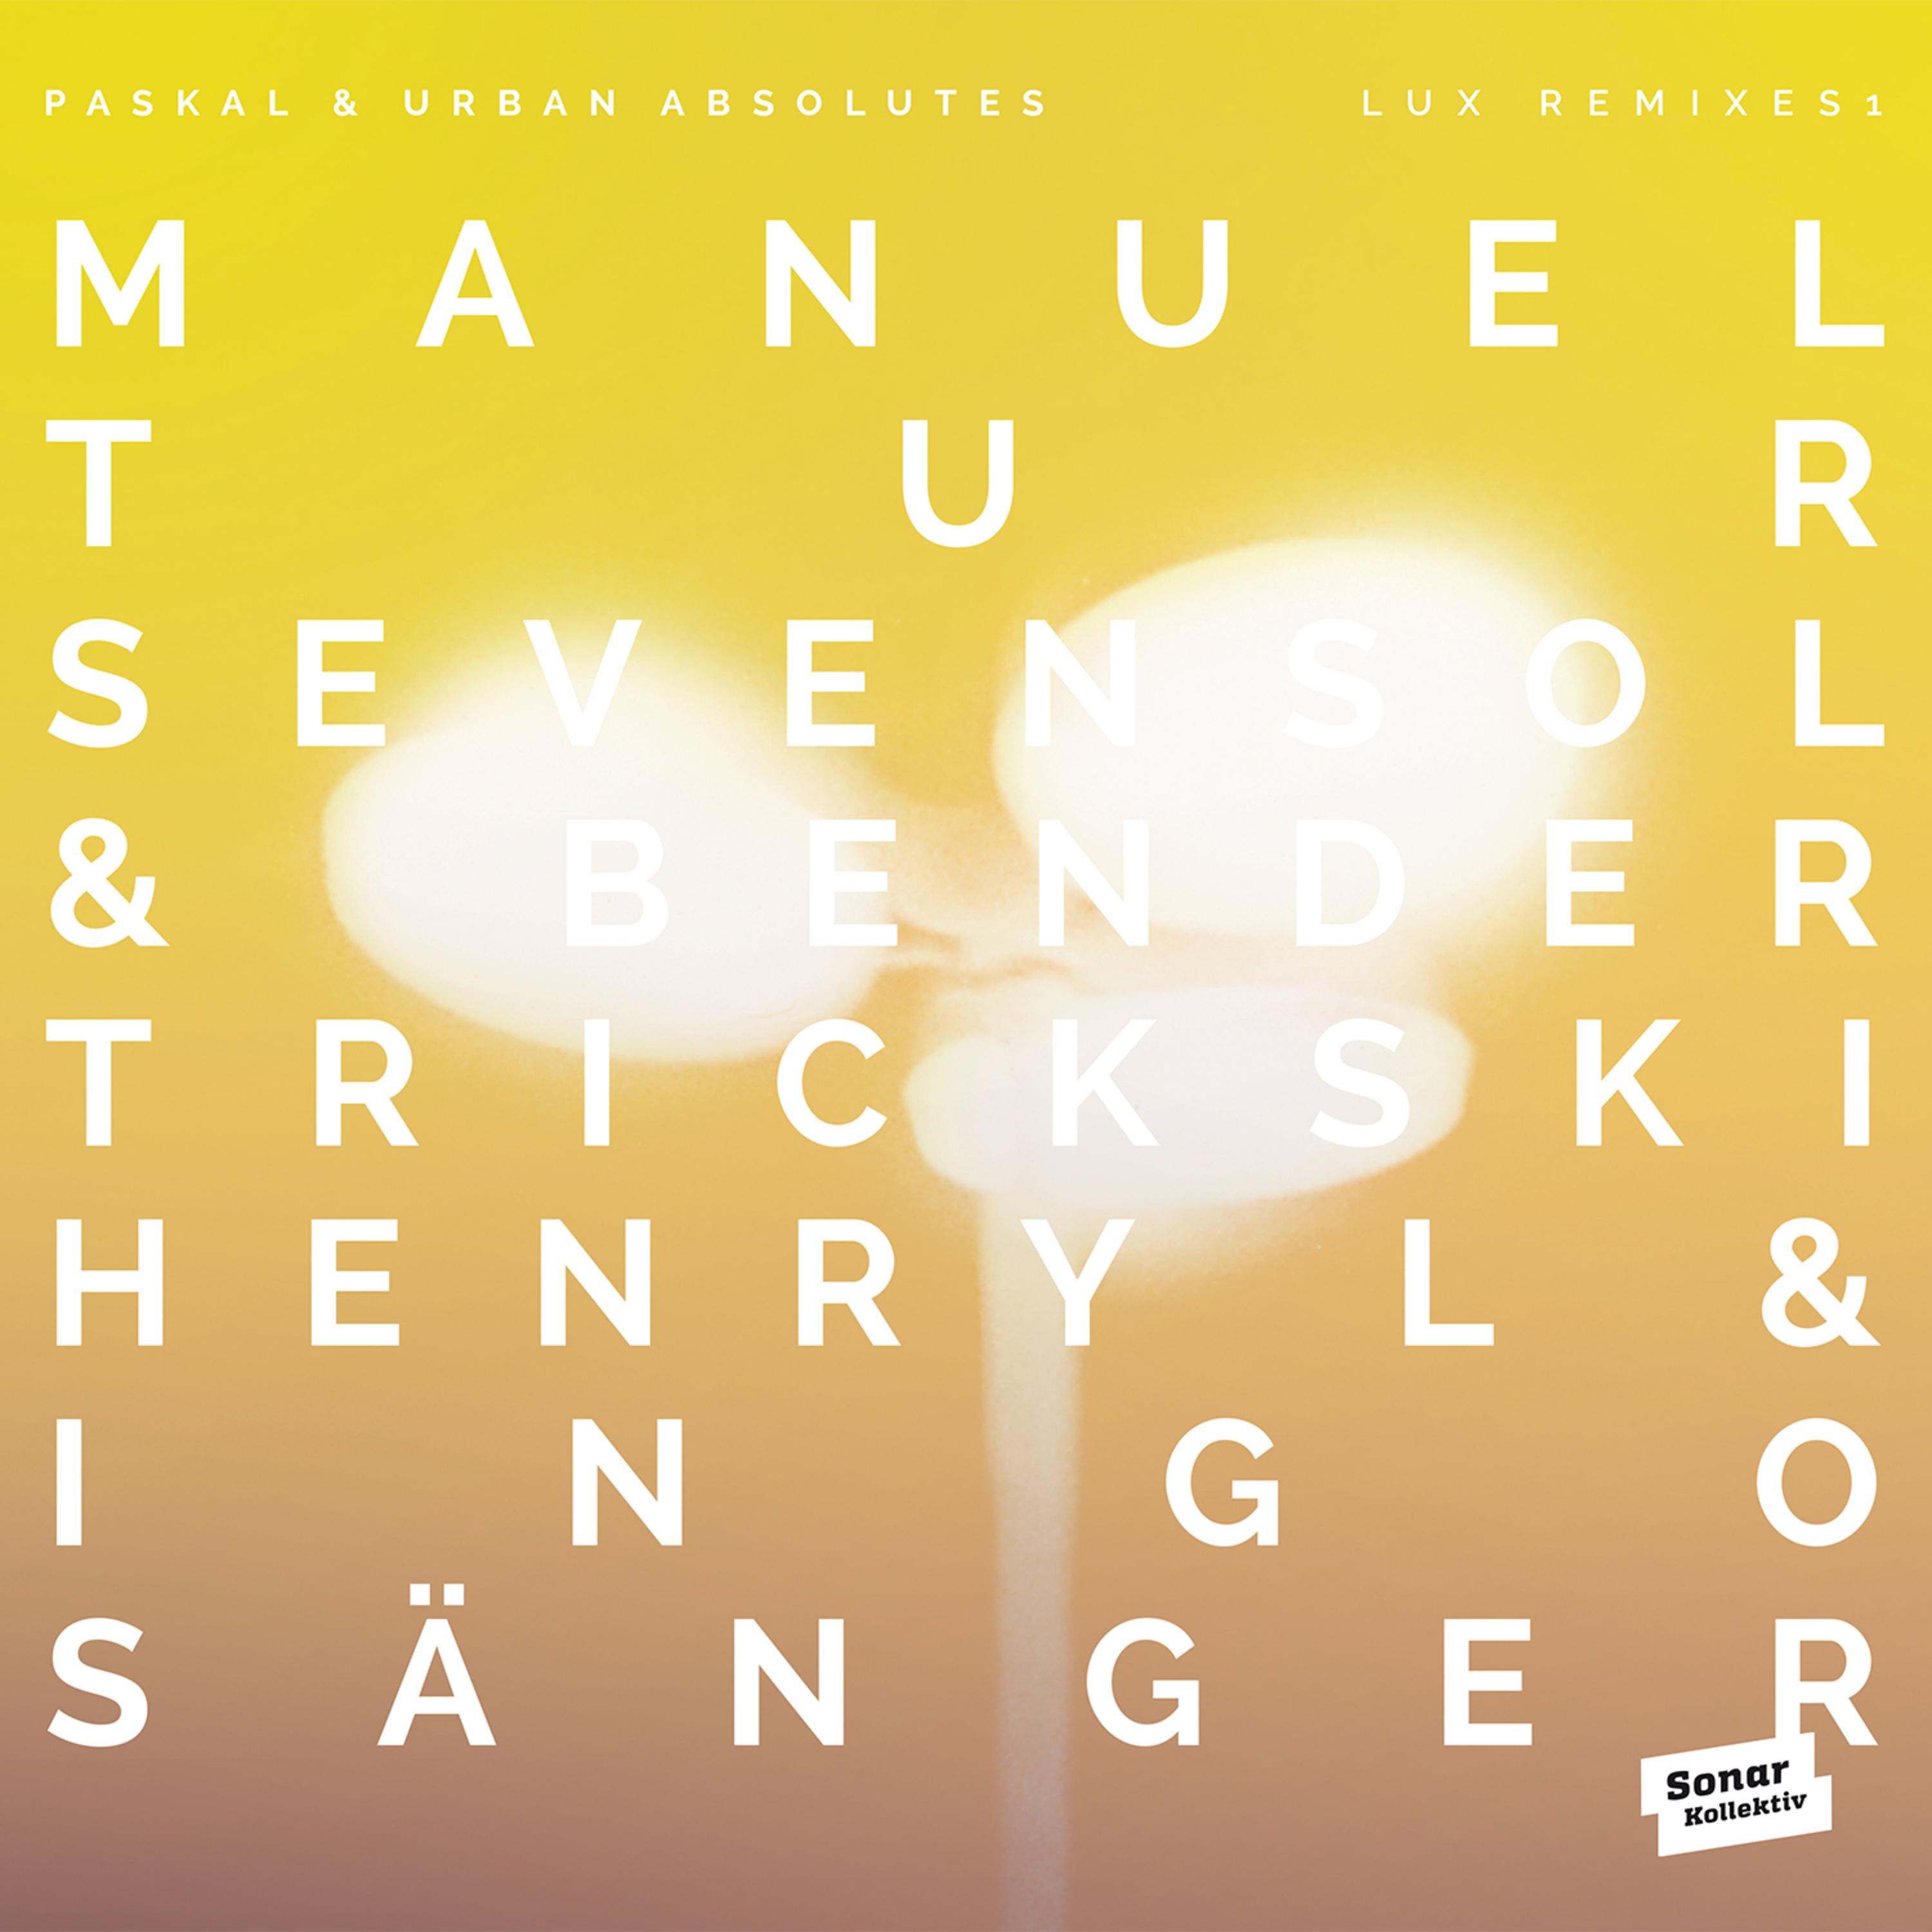 LUX Remixes 1 by Manuel Tur, Trickski, Sevensol  Bender, Henry L  Ingo S nger